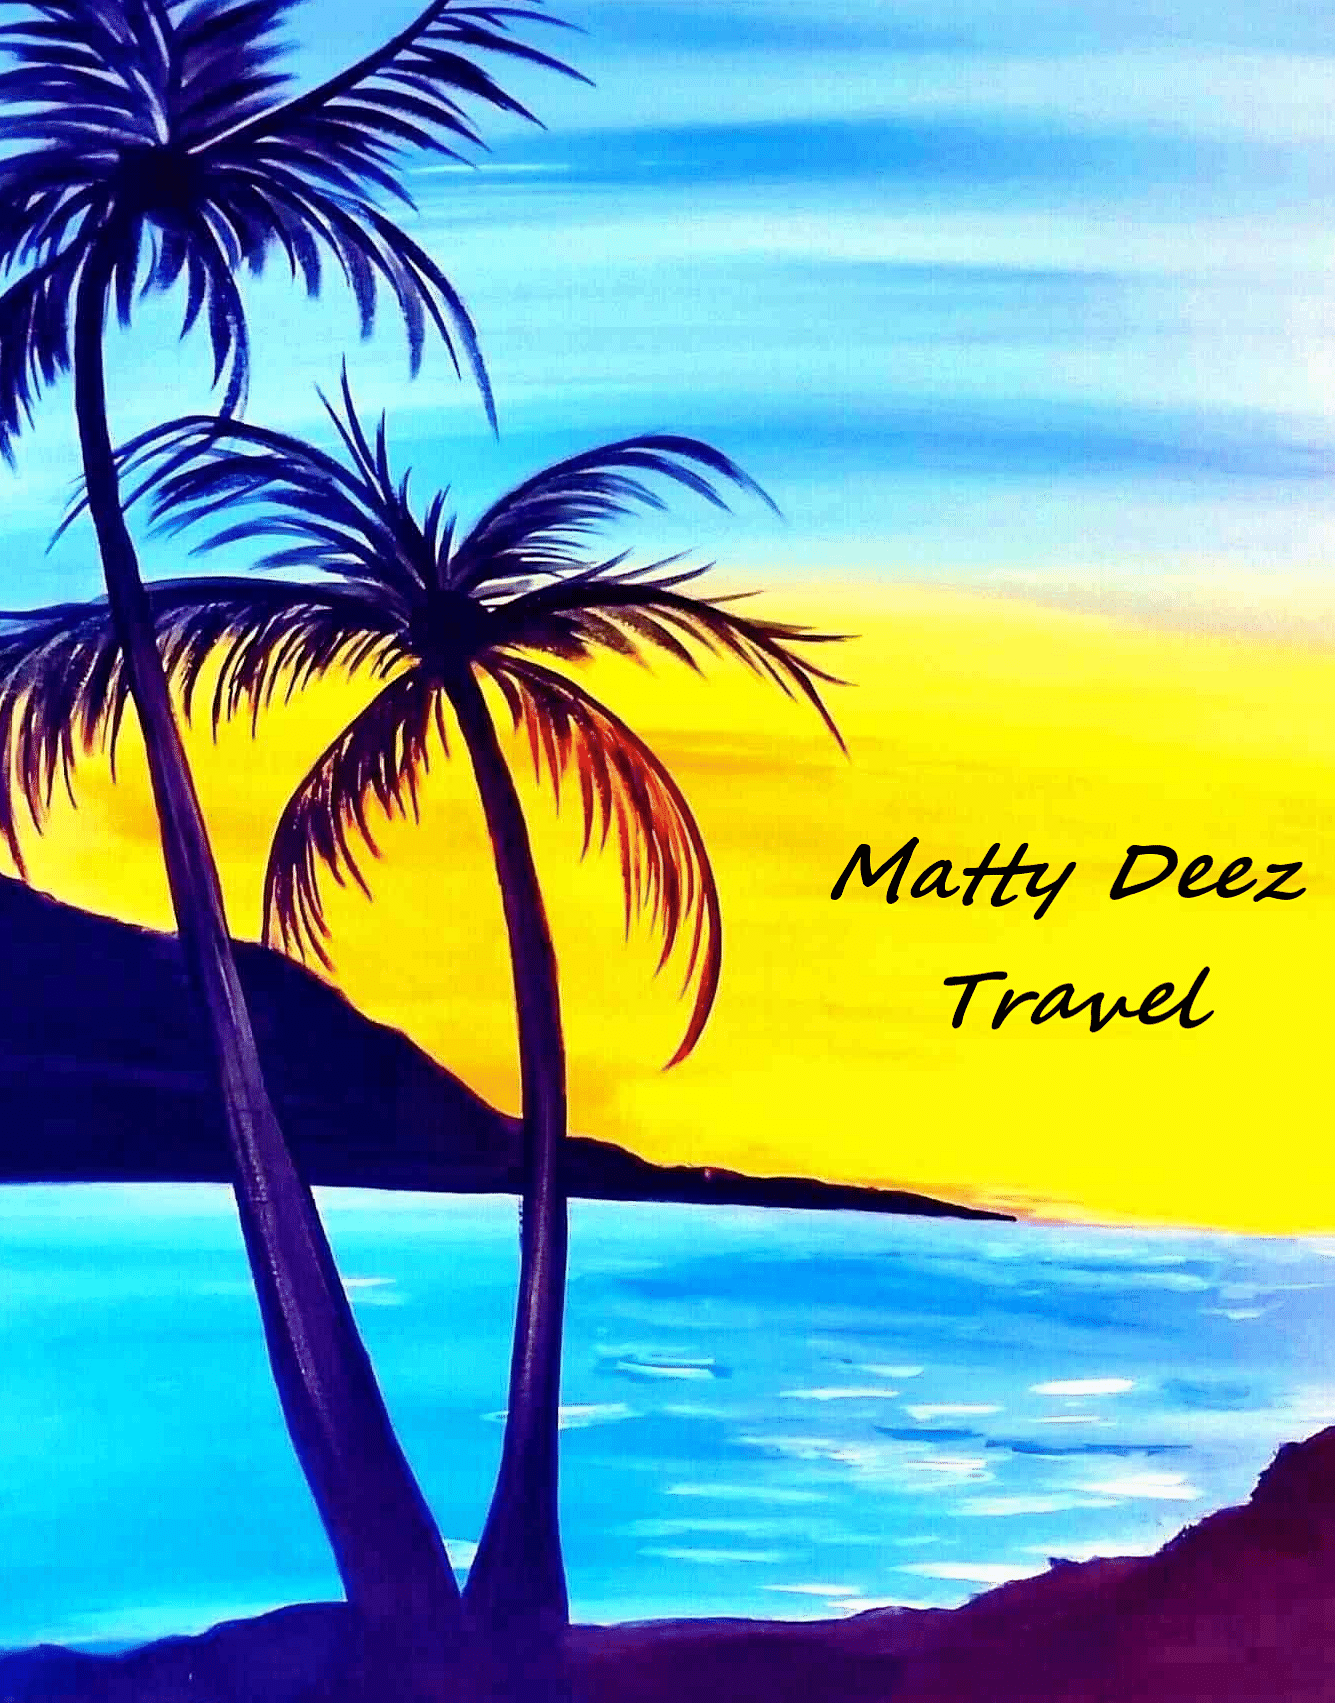 Matty Deez Travel culture